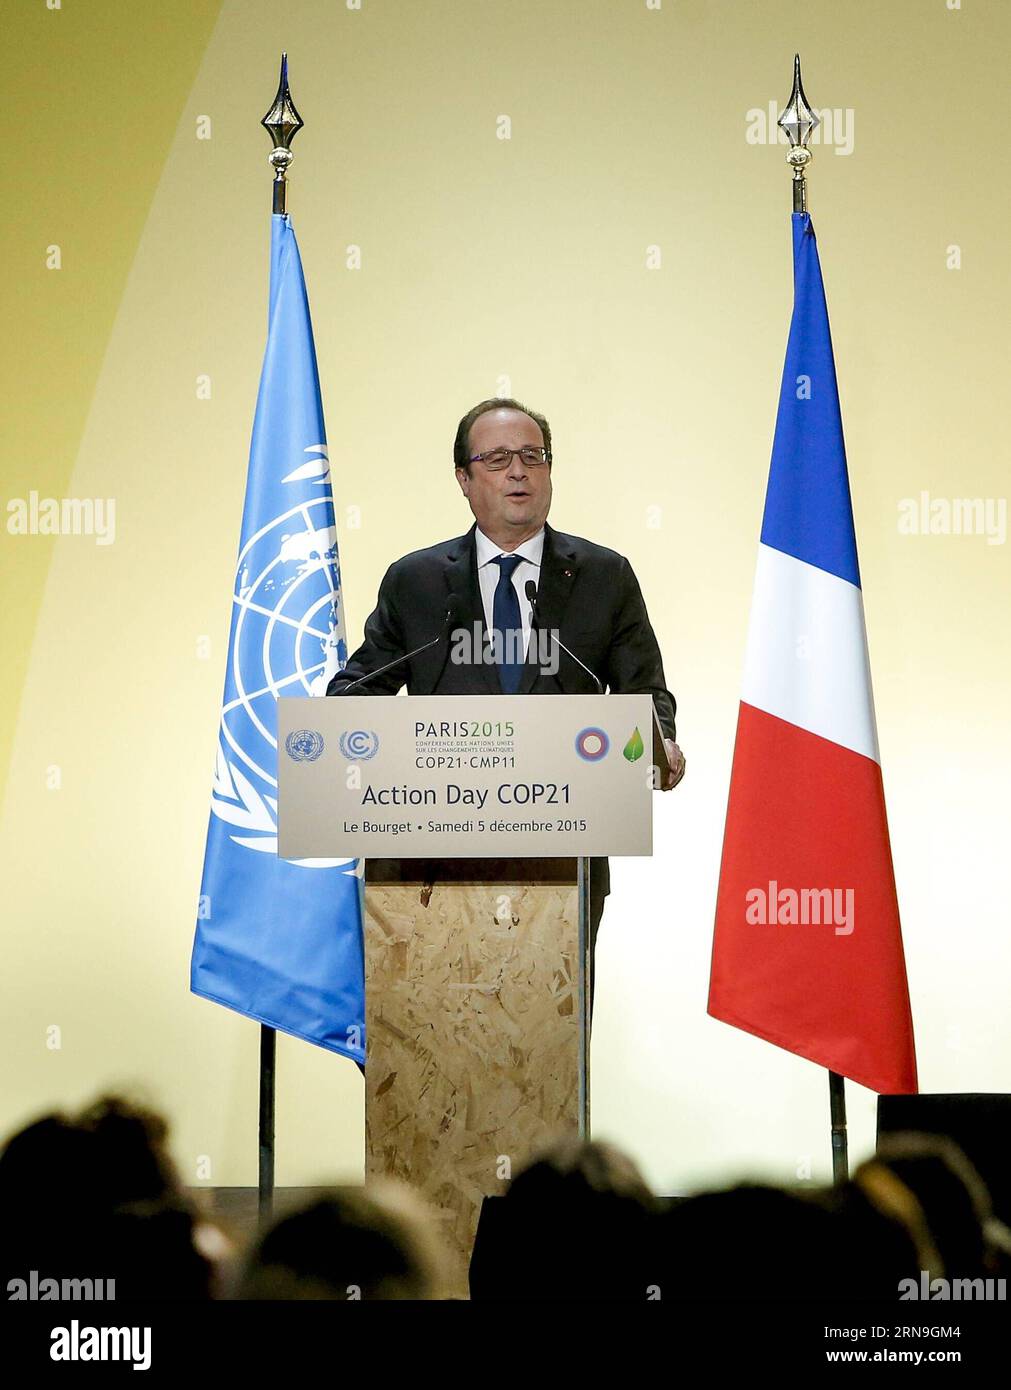 Weltklimagipfel in Paris - Aktionstag (151205) -- PARIS, 5. Dezember 2015 -- der französische Präsident Francois Hollande spricht zum Aktionstag der Weltklimakonferenz der Vereinten Nationen 2015 (COP 21) in Le Bourget am 5. Dezember 2015 in den nördlichen Vororten von Paris. Am Samstag haben die Verhandlungsführer in Paris einen endgültigen Entwurf eines neuen globalen Klimaabkommens erreicht, der den Ministern in der nächsten Woche die Gelegenheit bietet, sensible politische Unterschiede zu lesen und zu bewältigen. ) FRANCE-PARIS-CLIMATE-COP 21-AKTIONSTAG ZhouxLei PUBLICATIONxNOTxINxCHN Weltklimagipfel in Paris Aktionstag 151205 Paris DEC 5 2015 Stockfoto